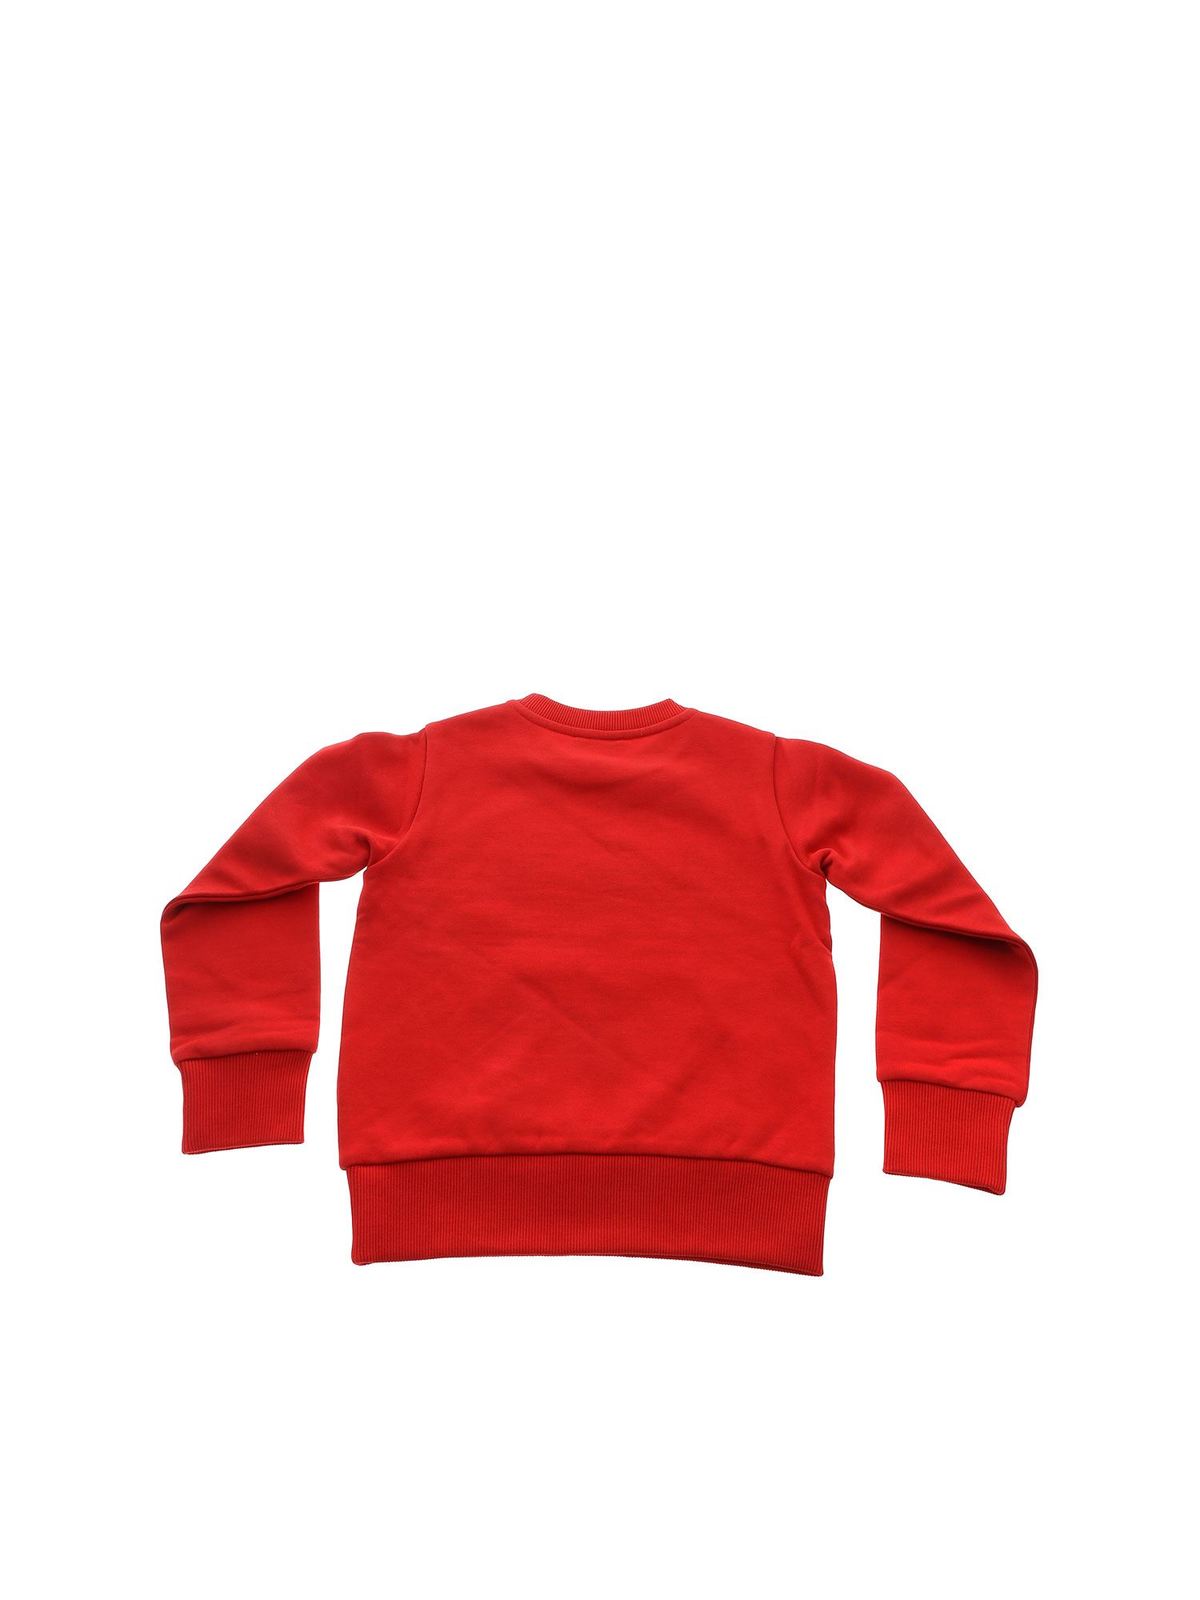 Moncler Red Sweater Shop, 59% OFF | www.stjamescheadle.co.uk